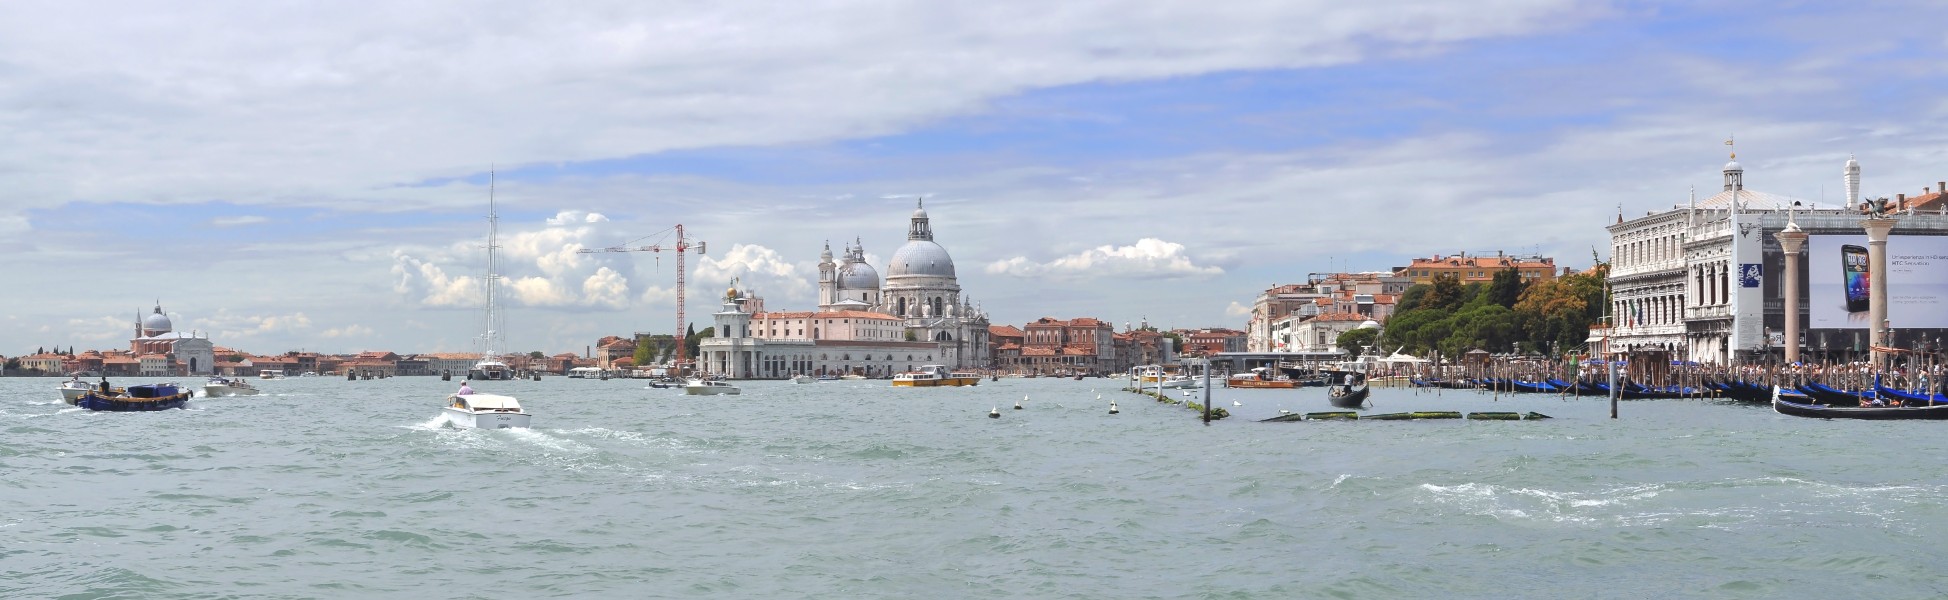 Bacino di San Marco in Venice 001